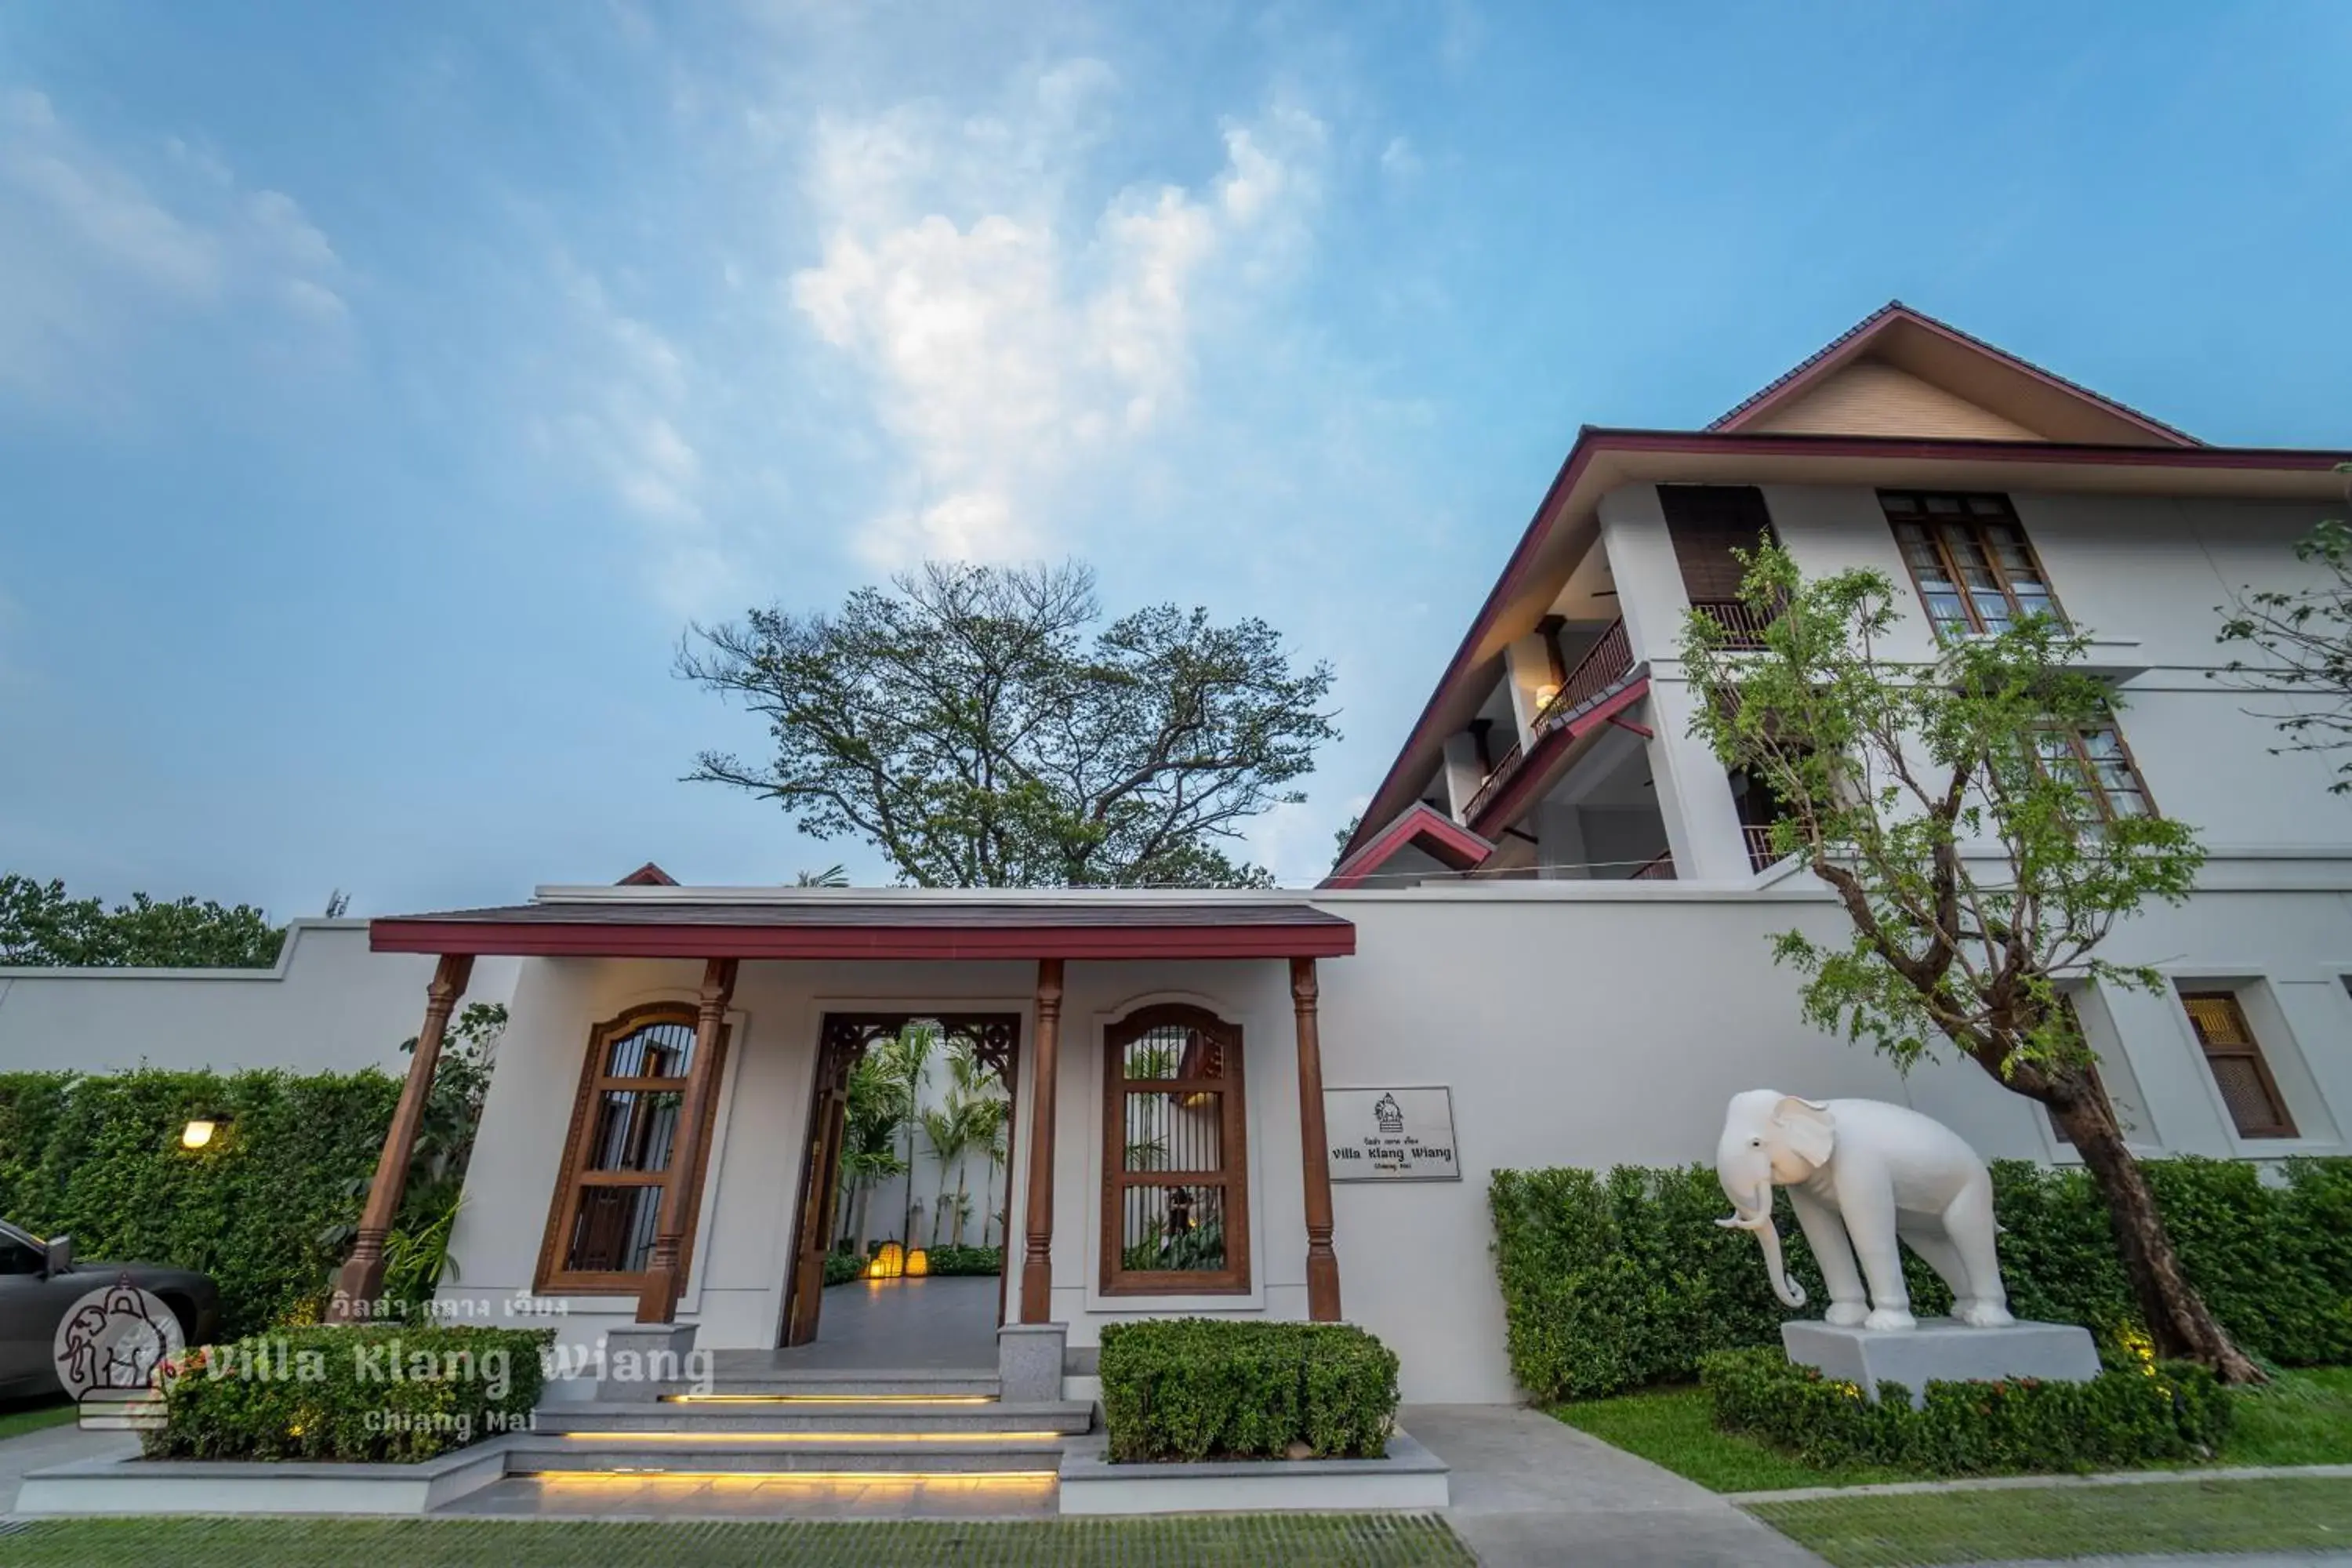 Facade/entrance, Property Building in Villa Klang Wiang